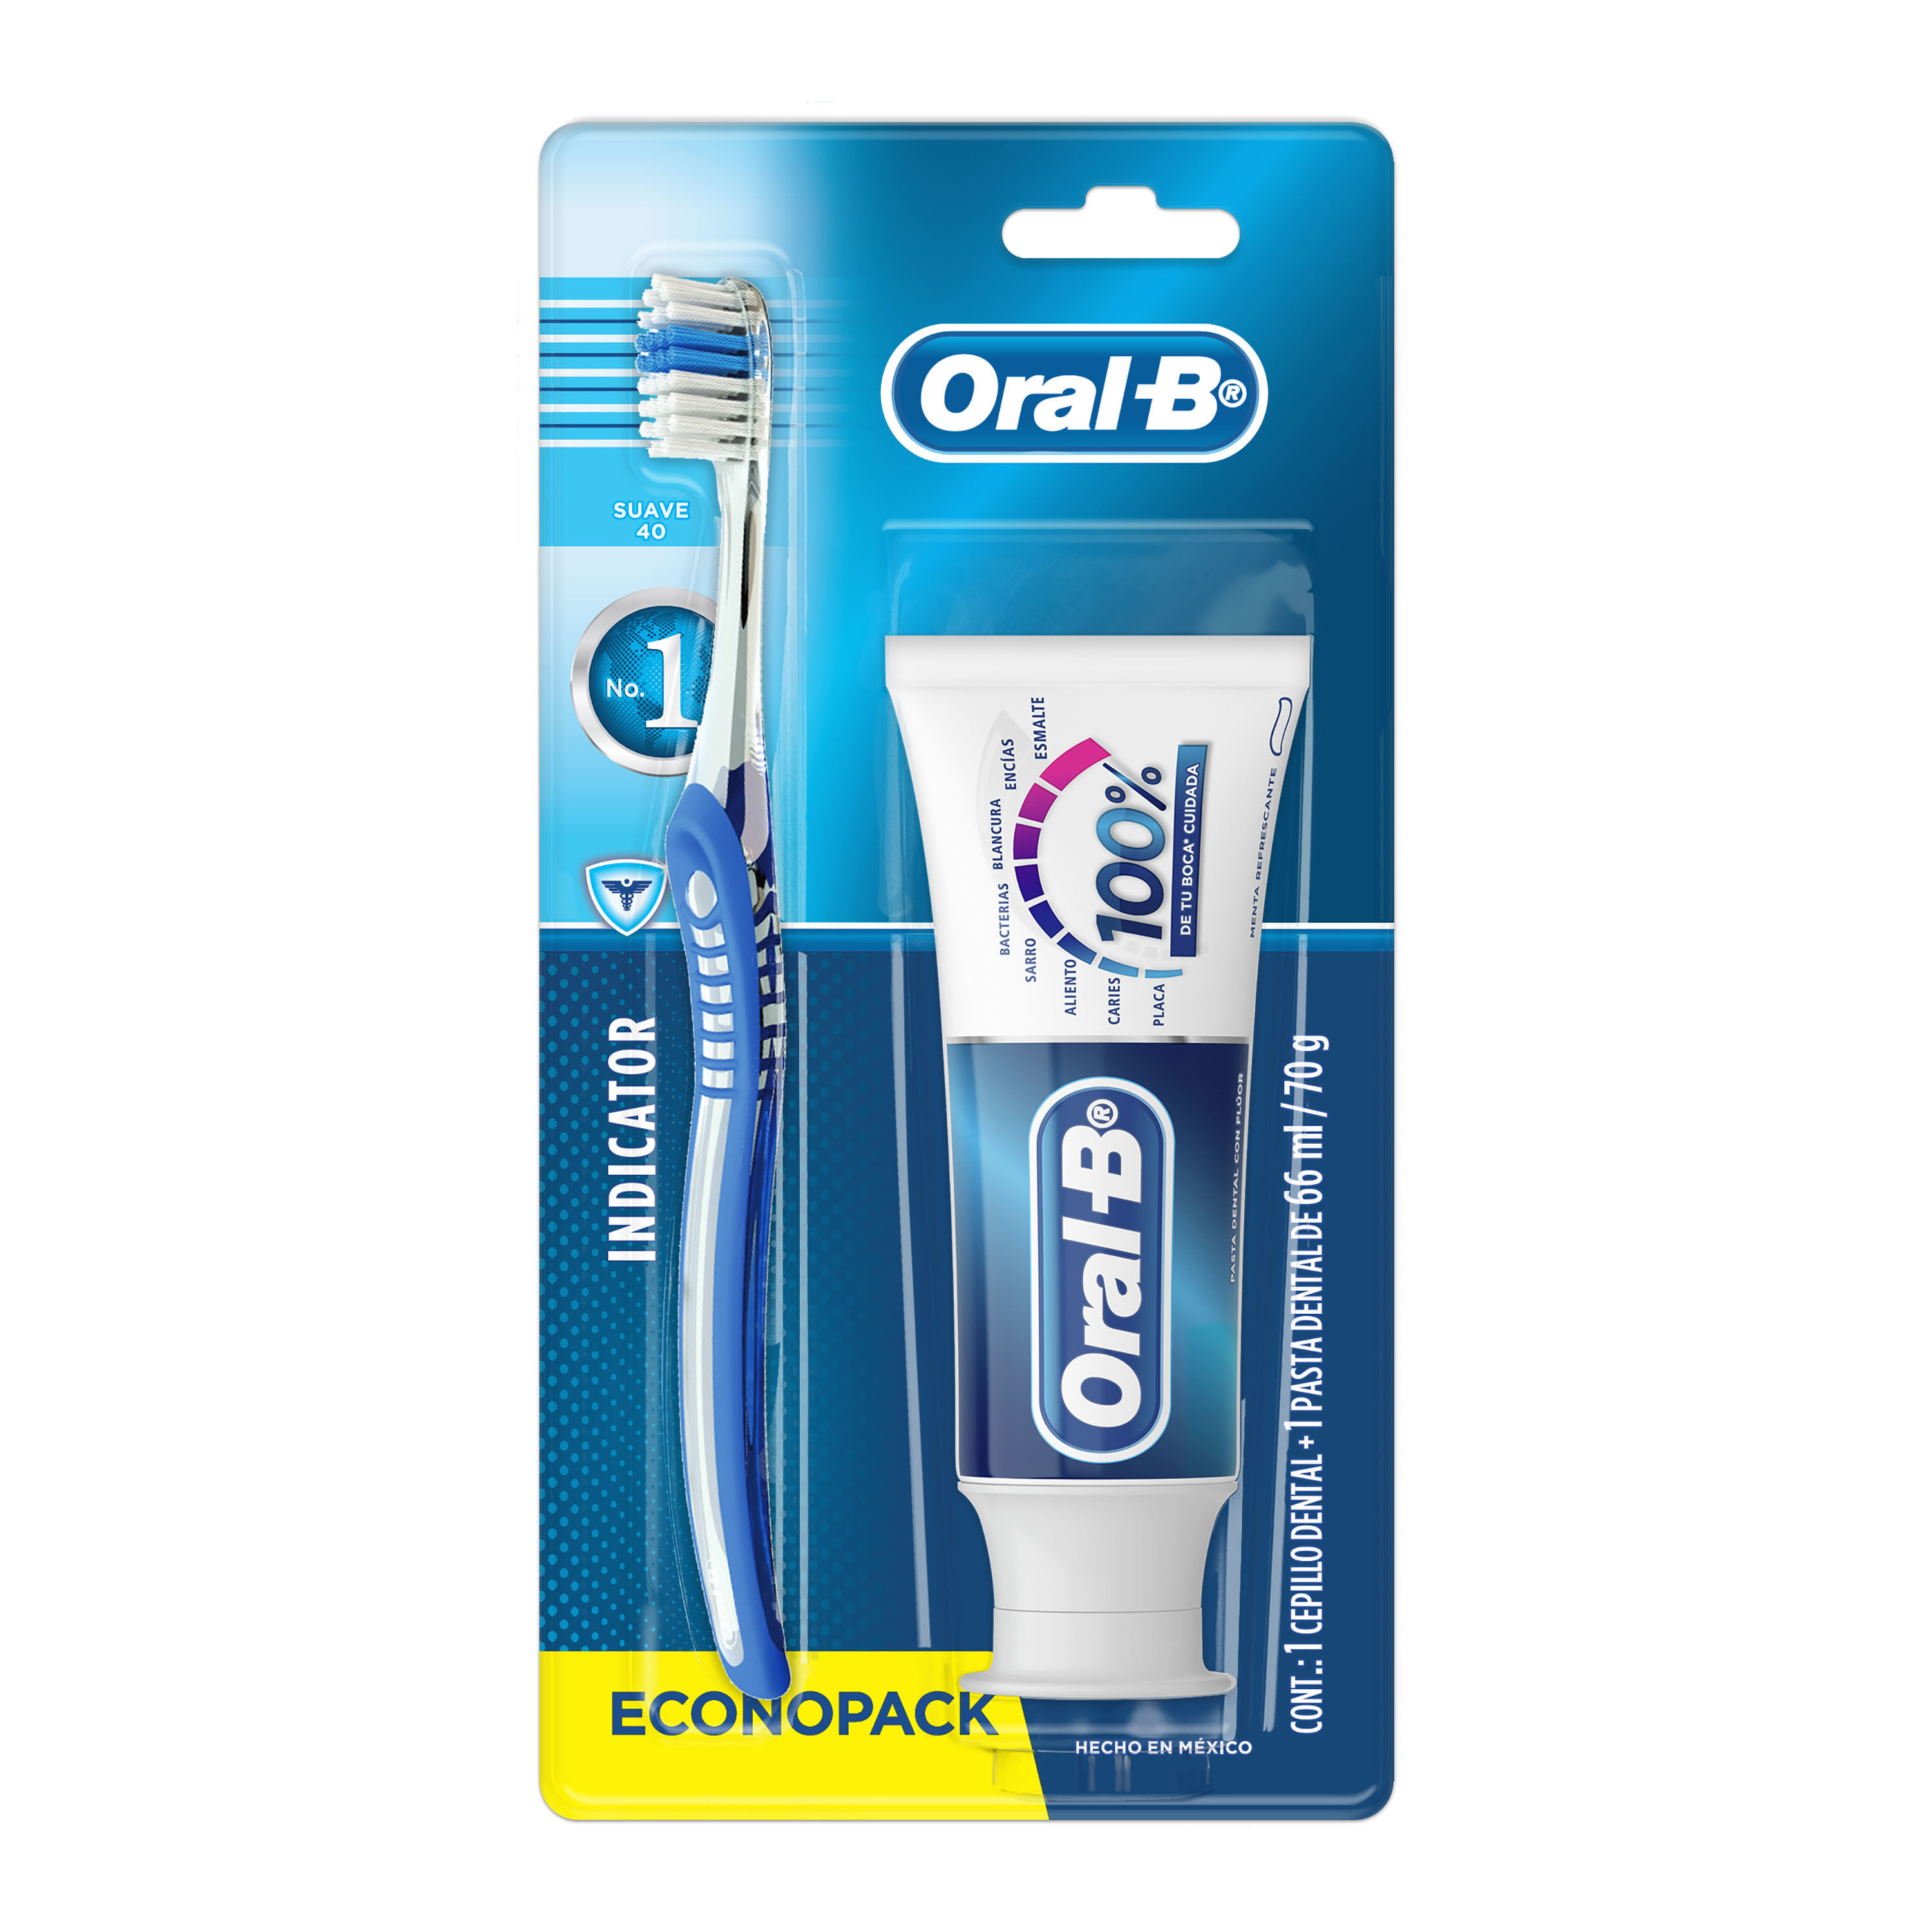 Comprar Pasta Dental Cepillo Oral B 66Ml